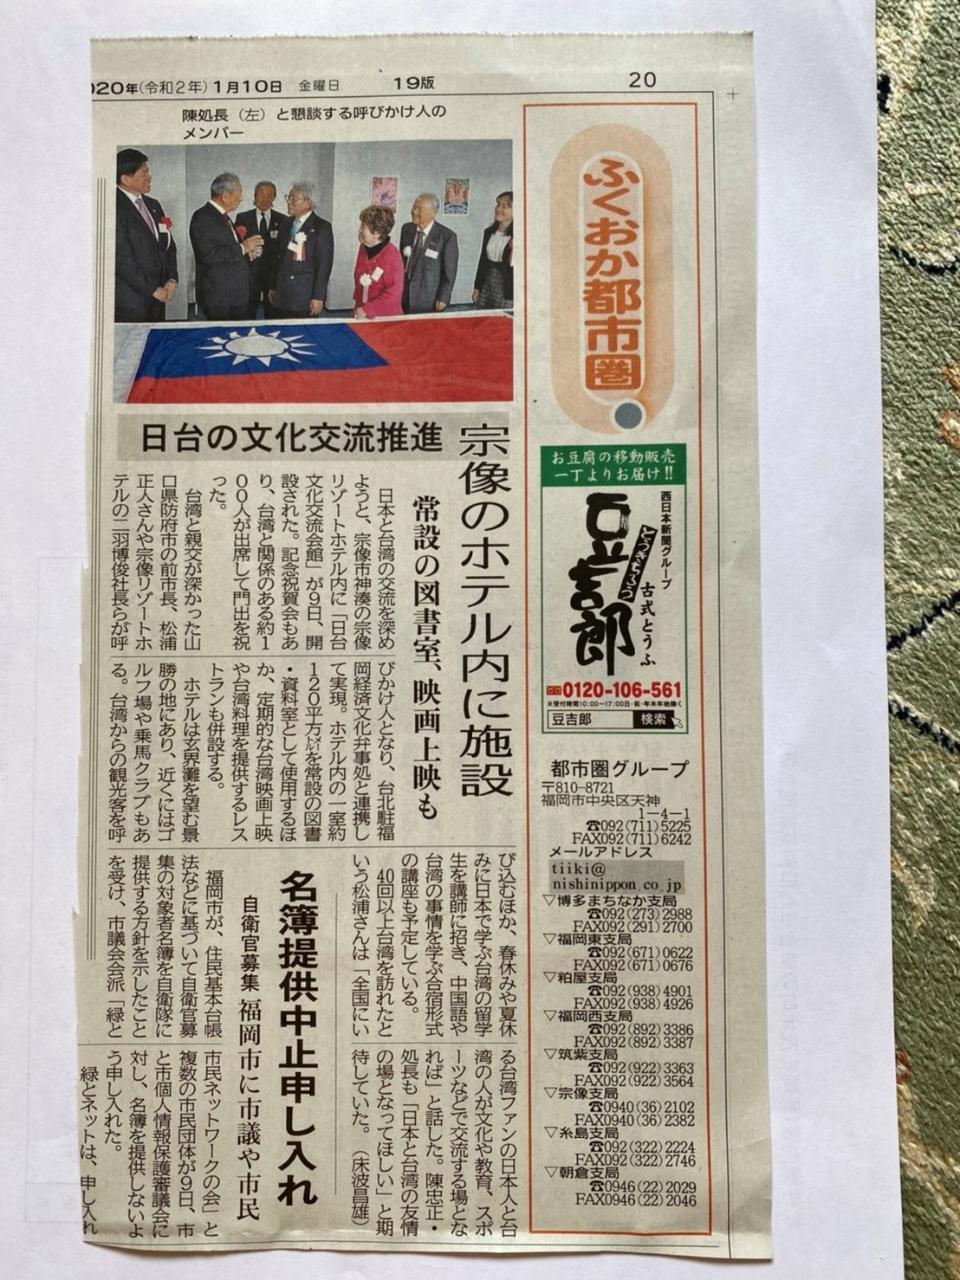 1月10日、西日本新聞で「日台文化交流会館開設」報道されました。